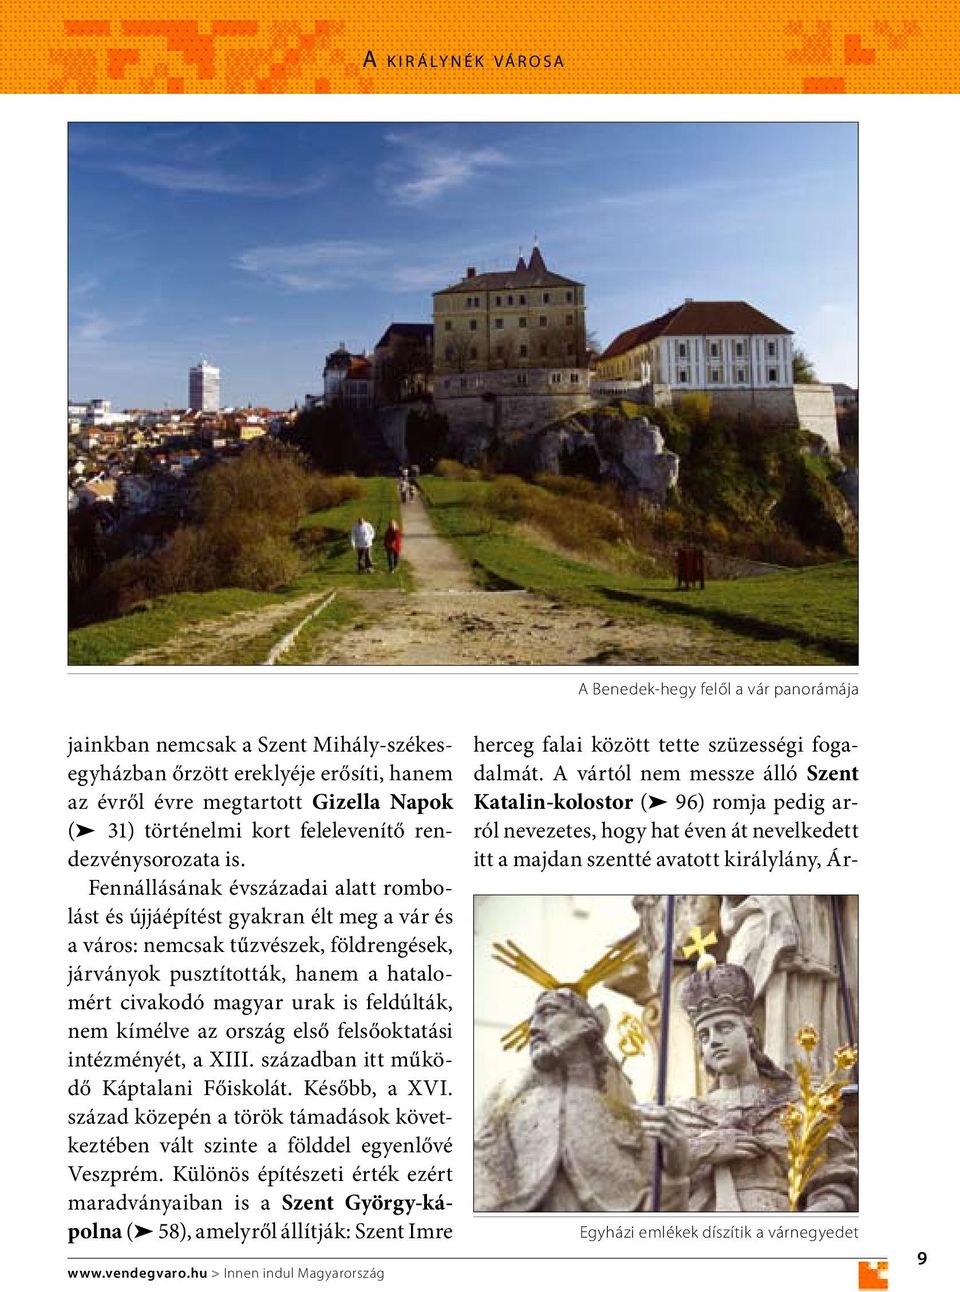 Fennállásának évszázadai alatt rombolást és újjáépítést gyakran élt meg a vár és a város: nemcsak tűzvészek, földrengések, járványok pusztították, hanem a hatalomért civakodó magyar urak is